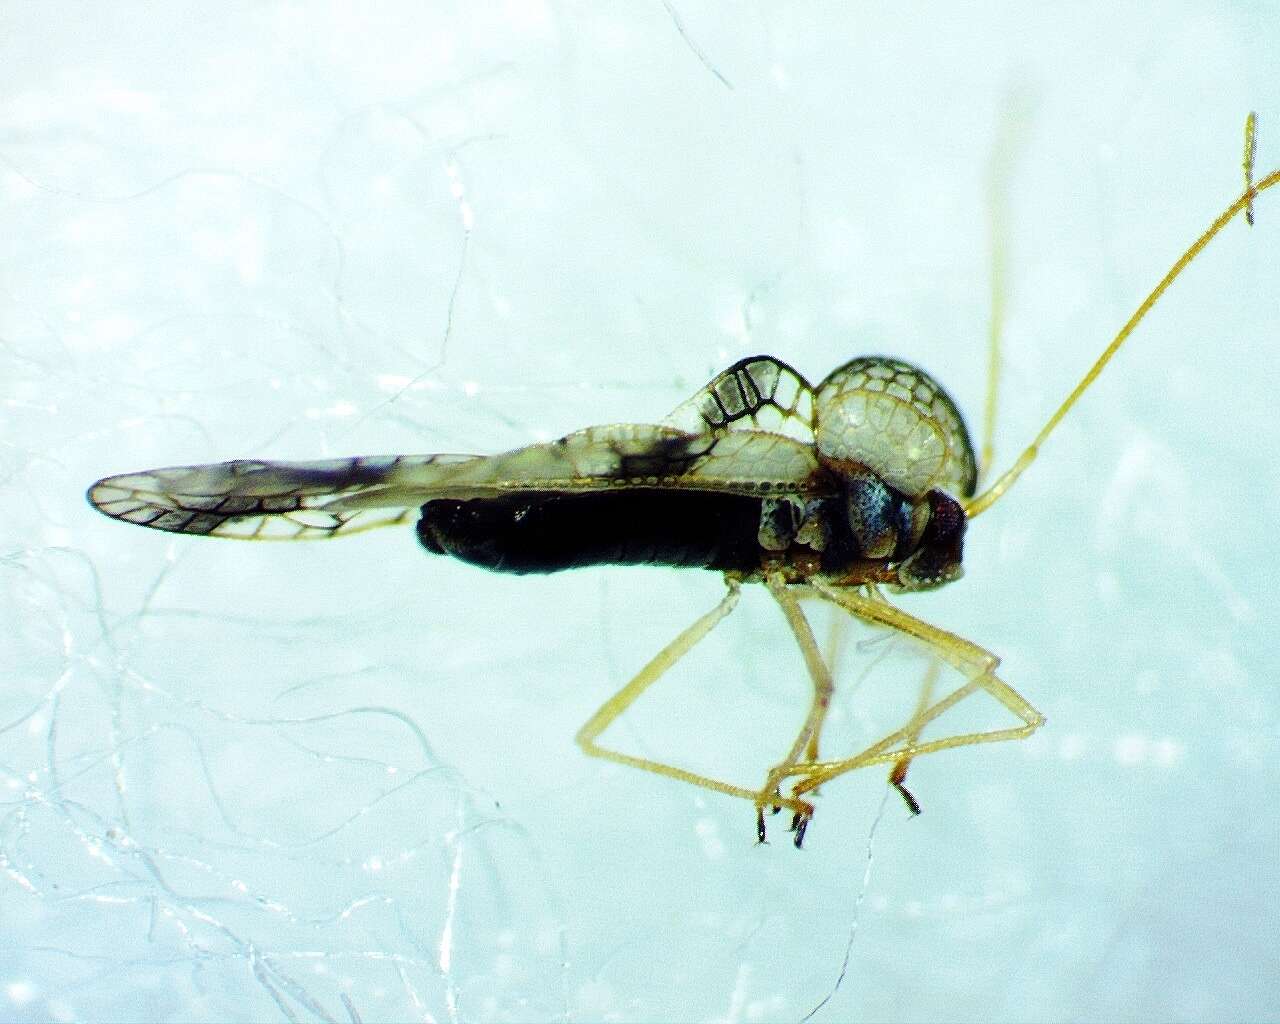 Image of azalea lace bug